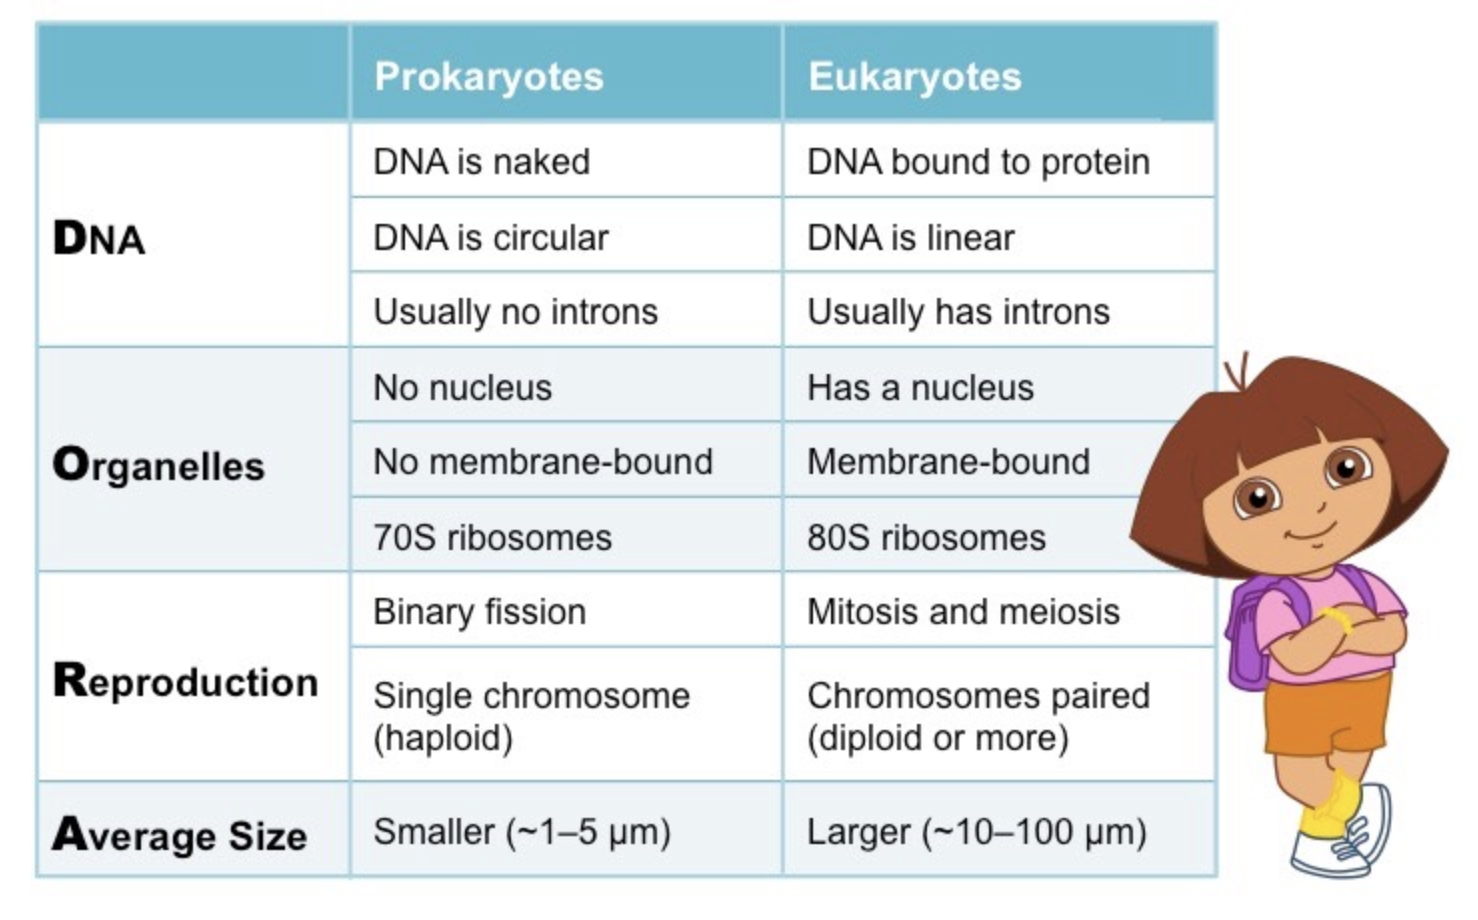 <ul><li><p>DNA</p></li><li><p>Organelles</p></li><li><p>Reproduction</p></li><li><p>Average Size</p></li></ul>